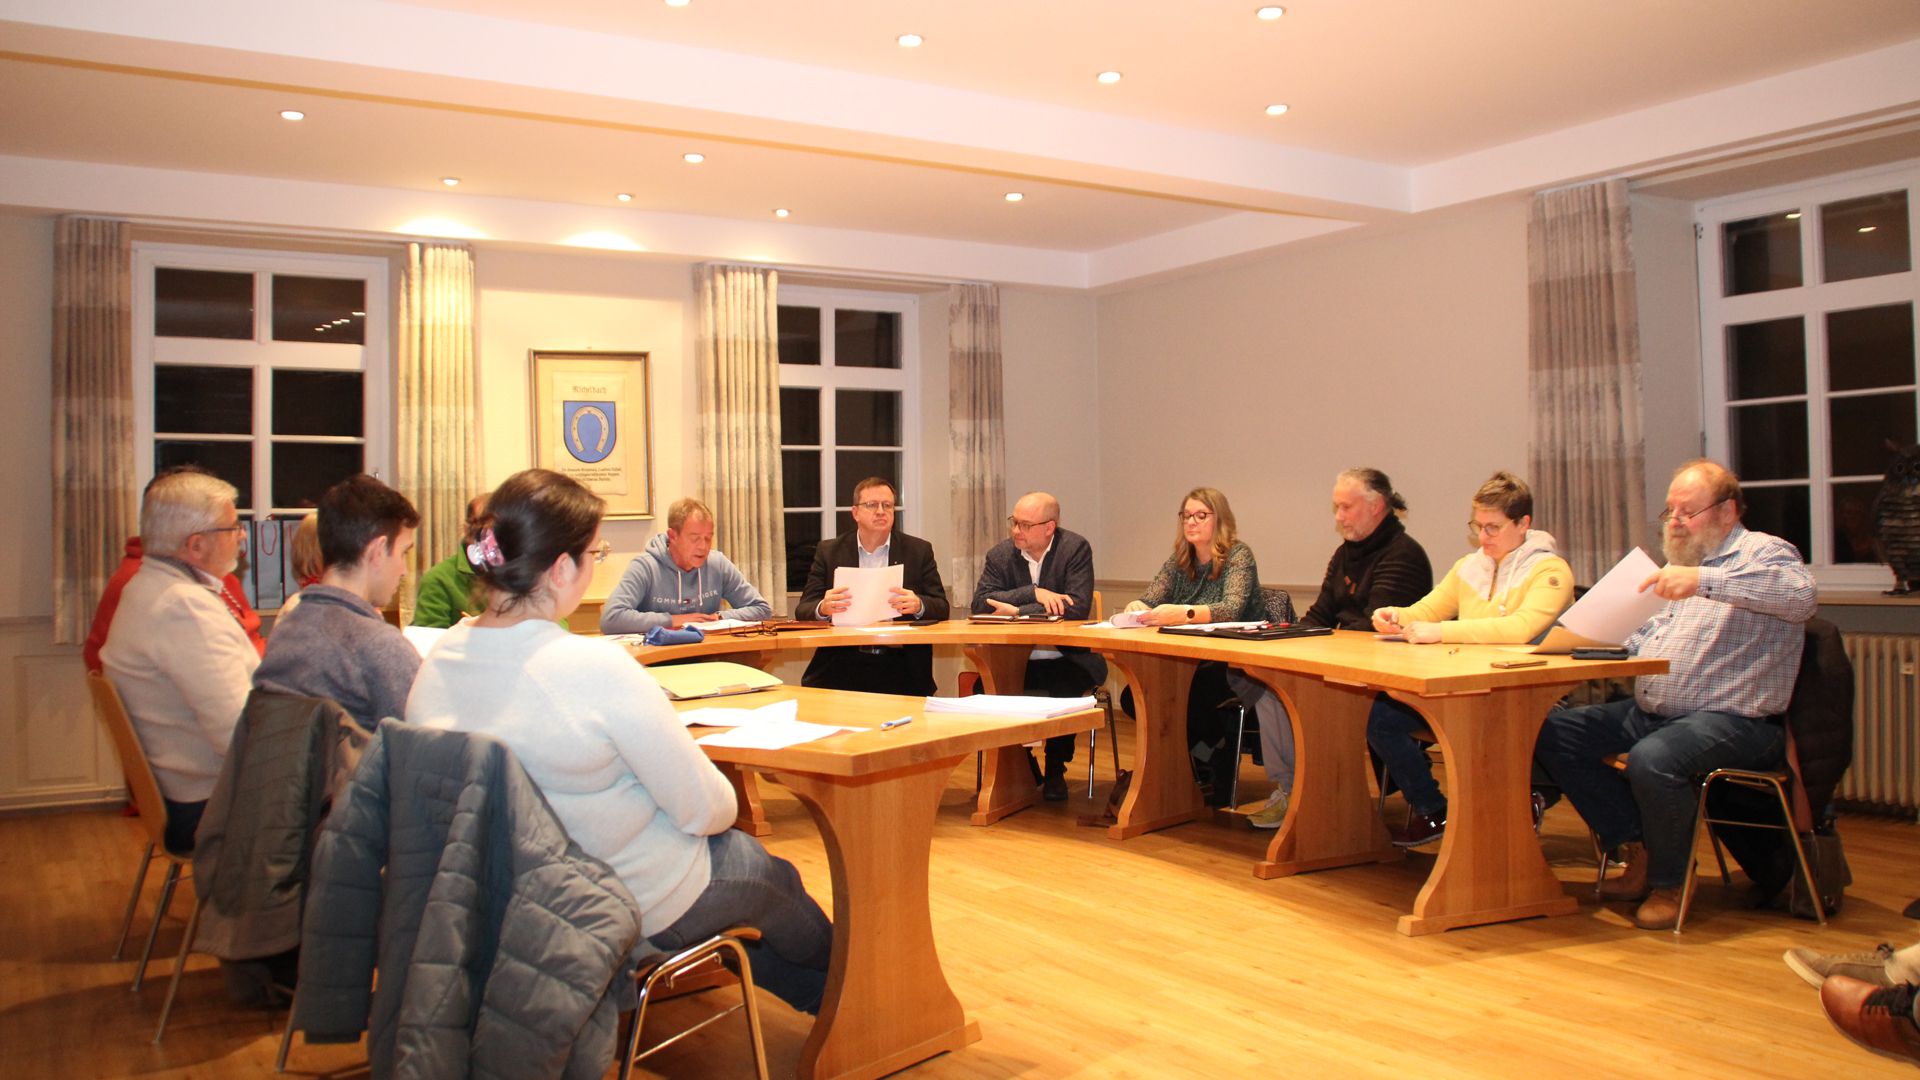 Letzte Sitzung des Ortschaftsrats Michelbach am 7. Dezember im kleinen Saal der Ortsverwaltung.